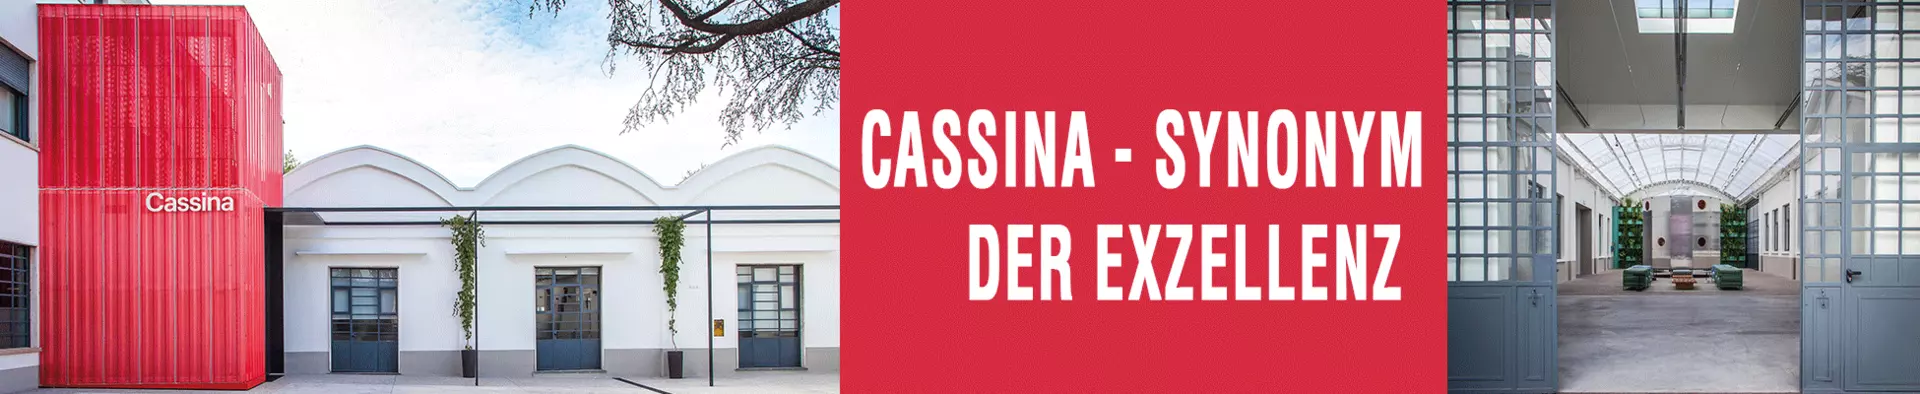 Cassina Meisterwerke - Synonym der Exzellenz